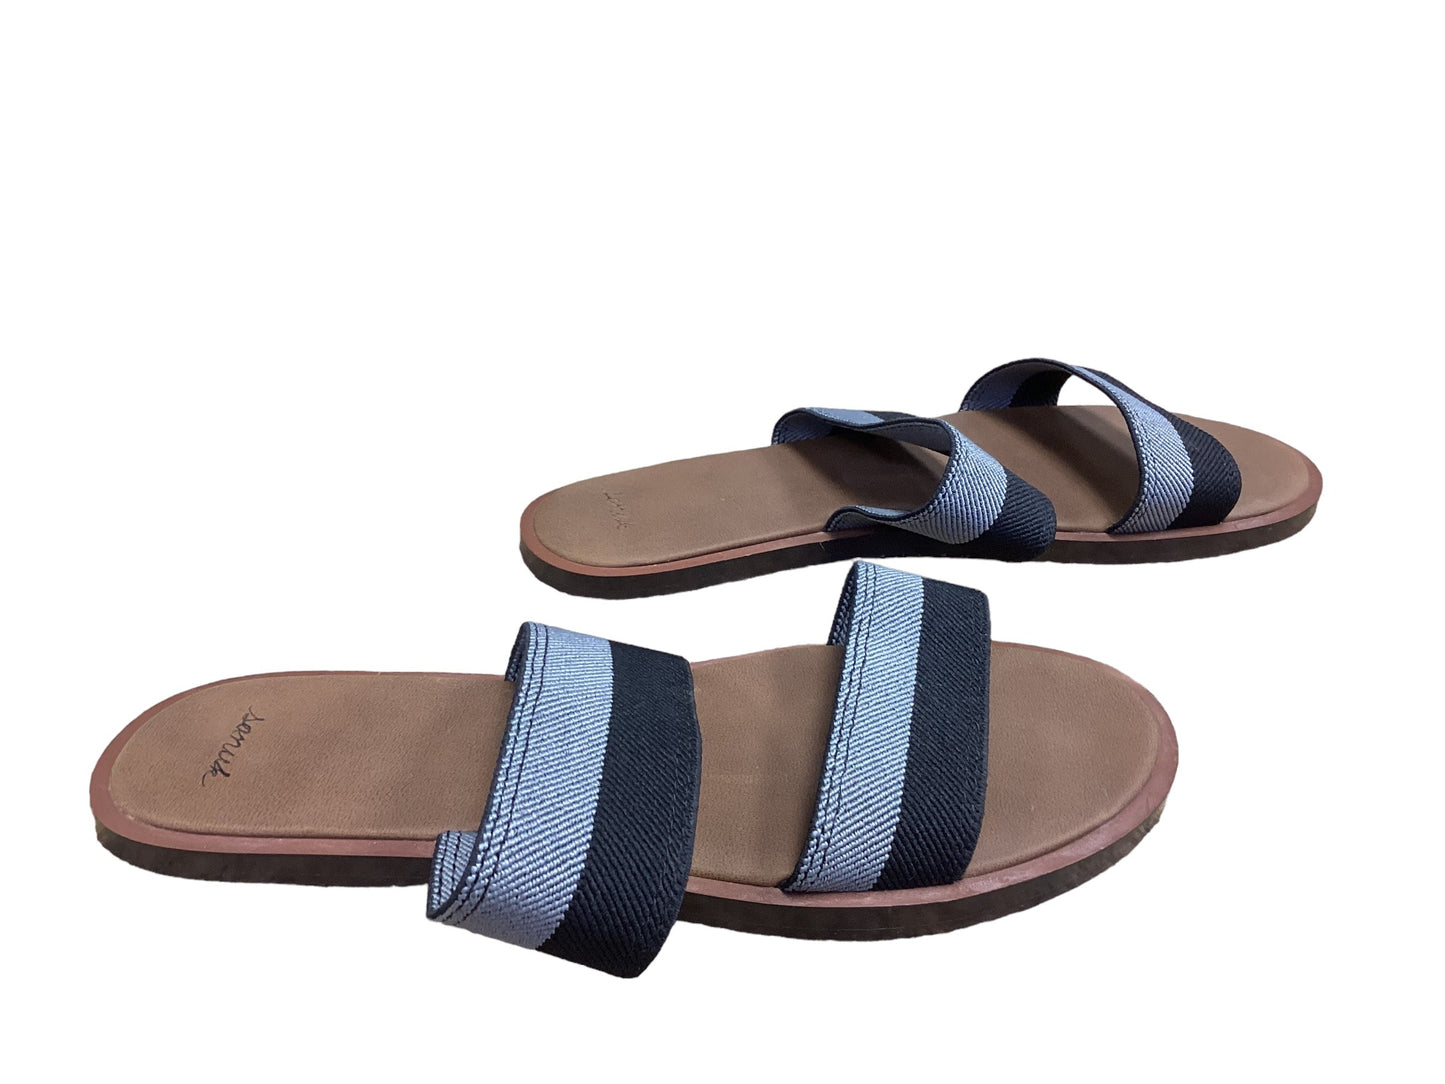 Black & Grey Sandals Flats Sanuk, Size 8